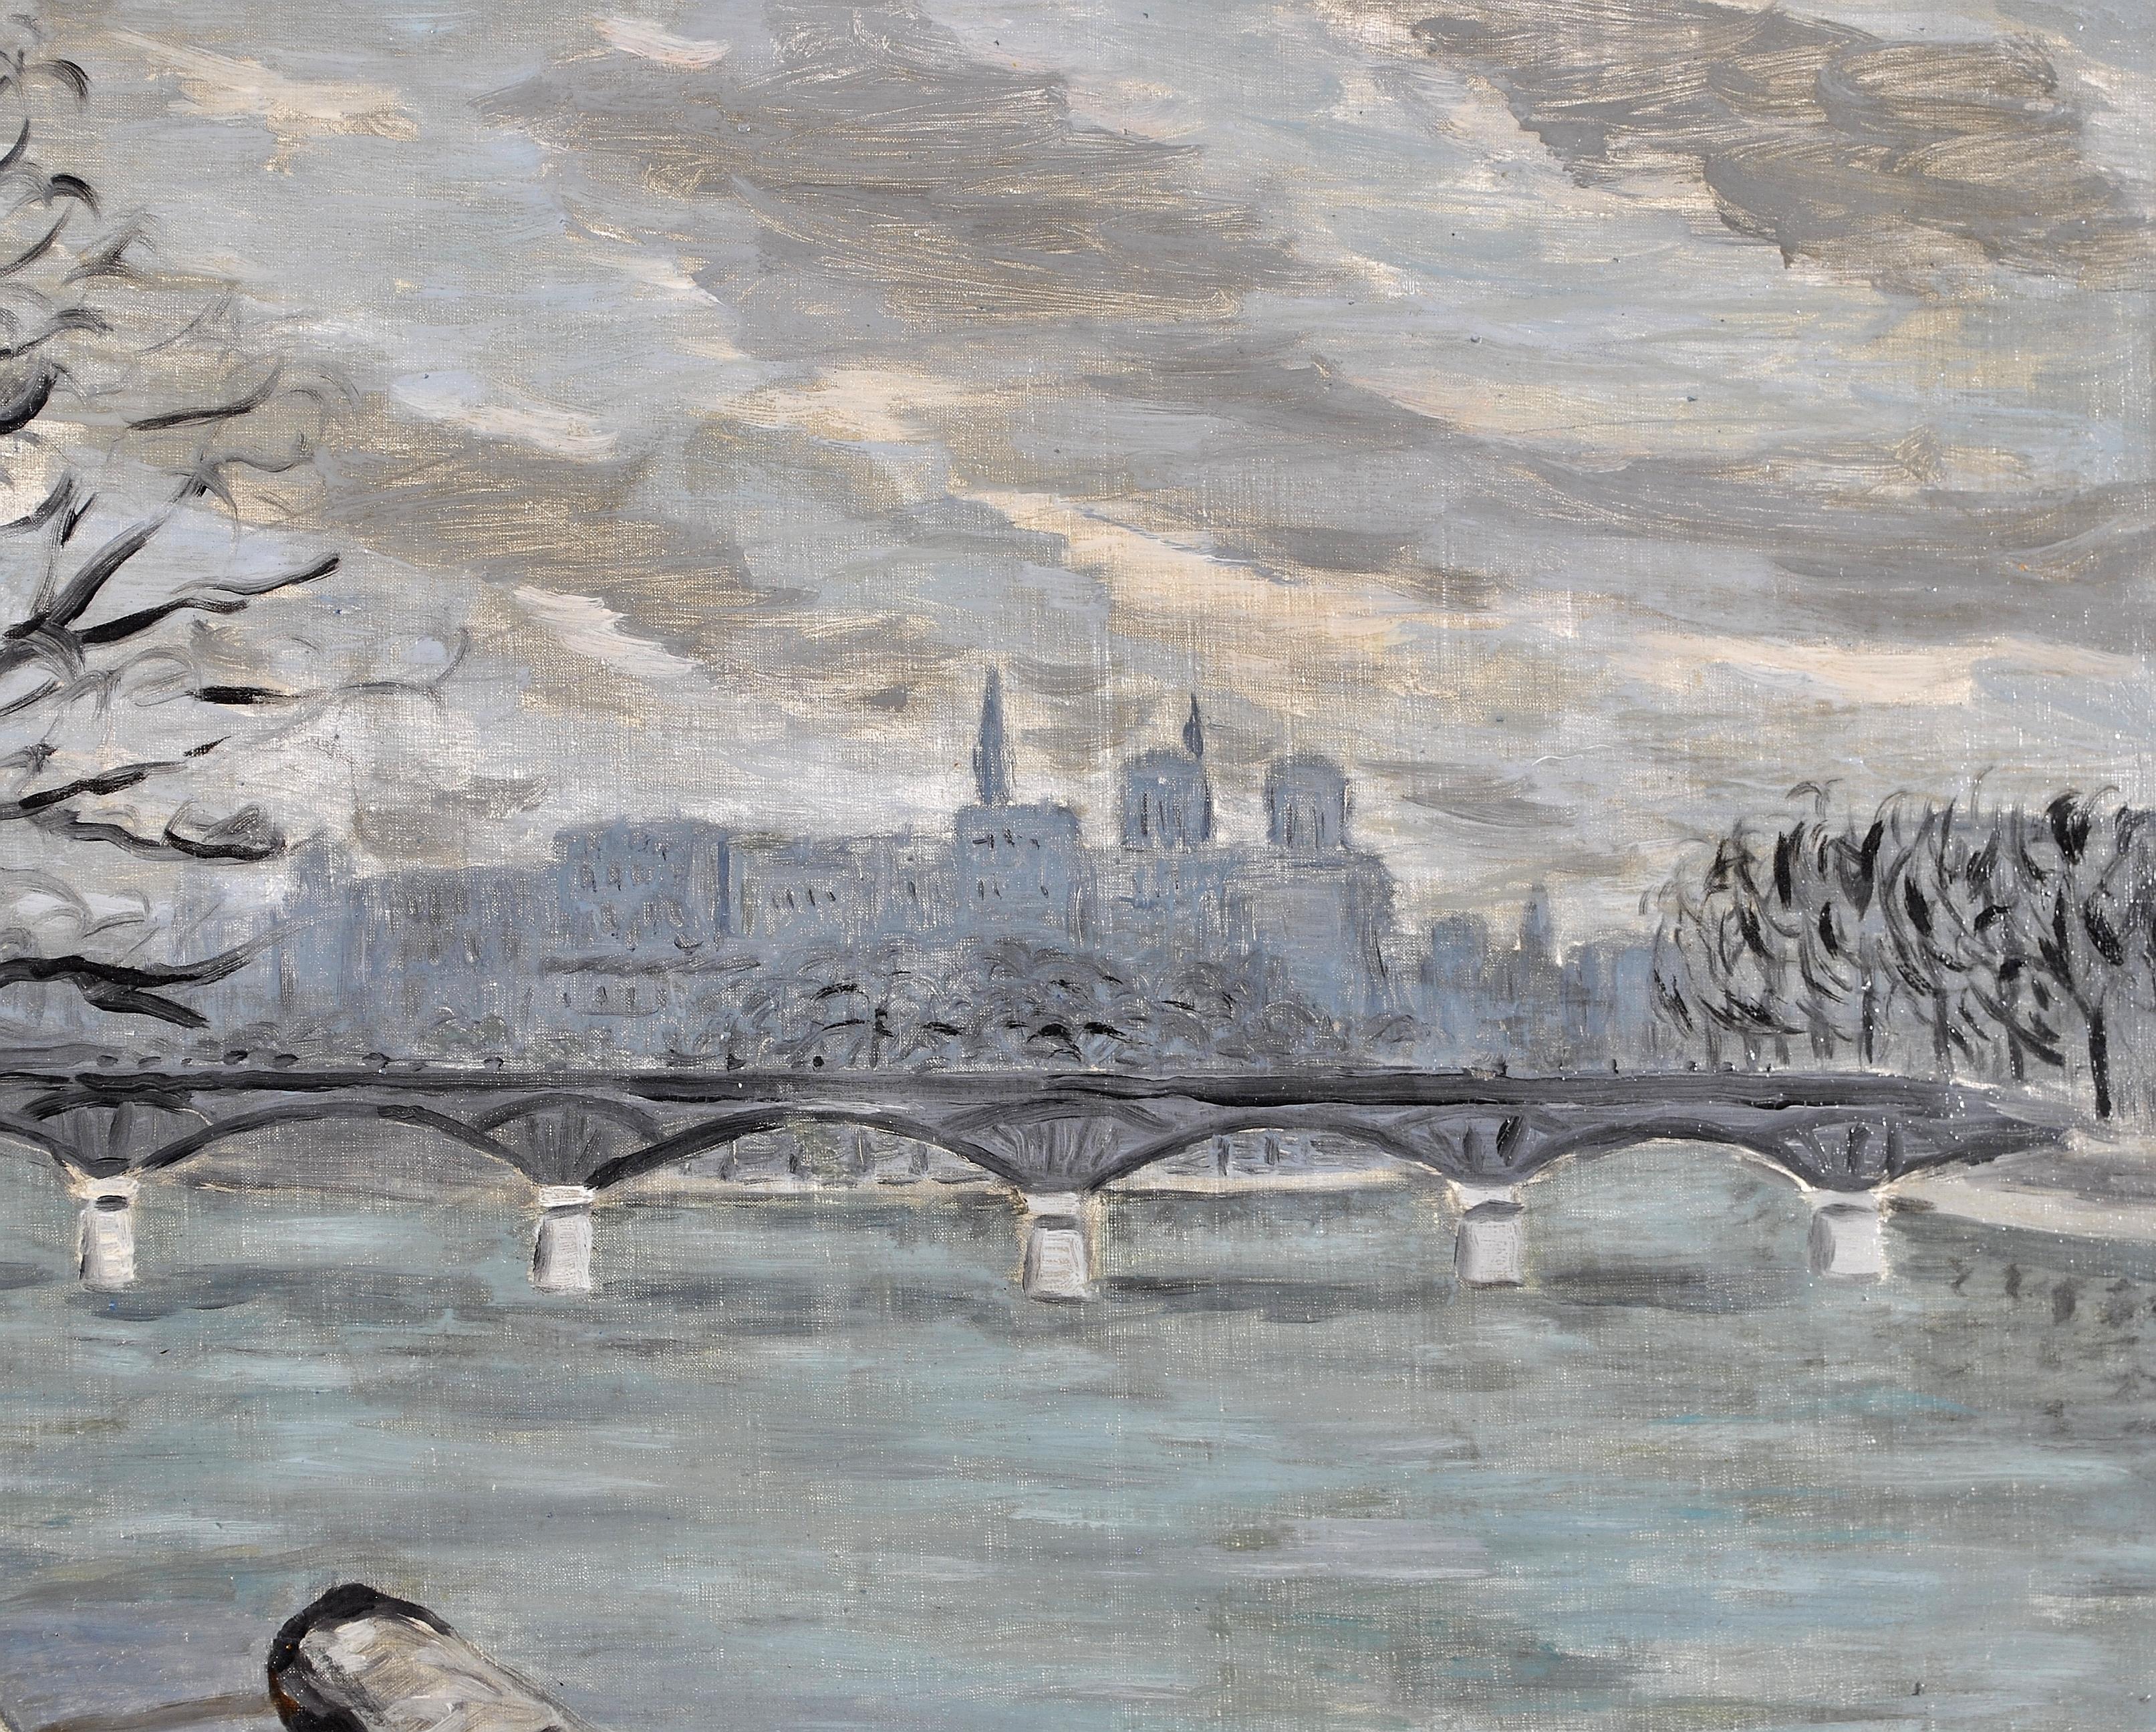 Ein sehr schönes, signiertes und datiertes impressionistisches Öl auf Leinwand von Lelia Caetani aus dem Jahr 1936, das den Fluss Seine in Paris darstellt. 

Die Künstlerin ist sehr interessant - siehe Biographie unten - sie war eine italienische